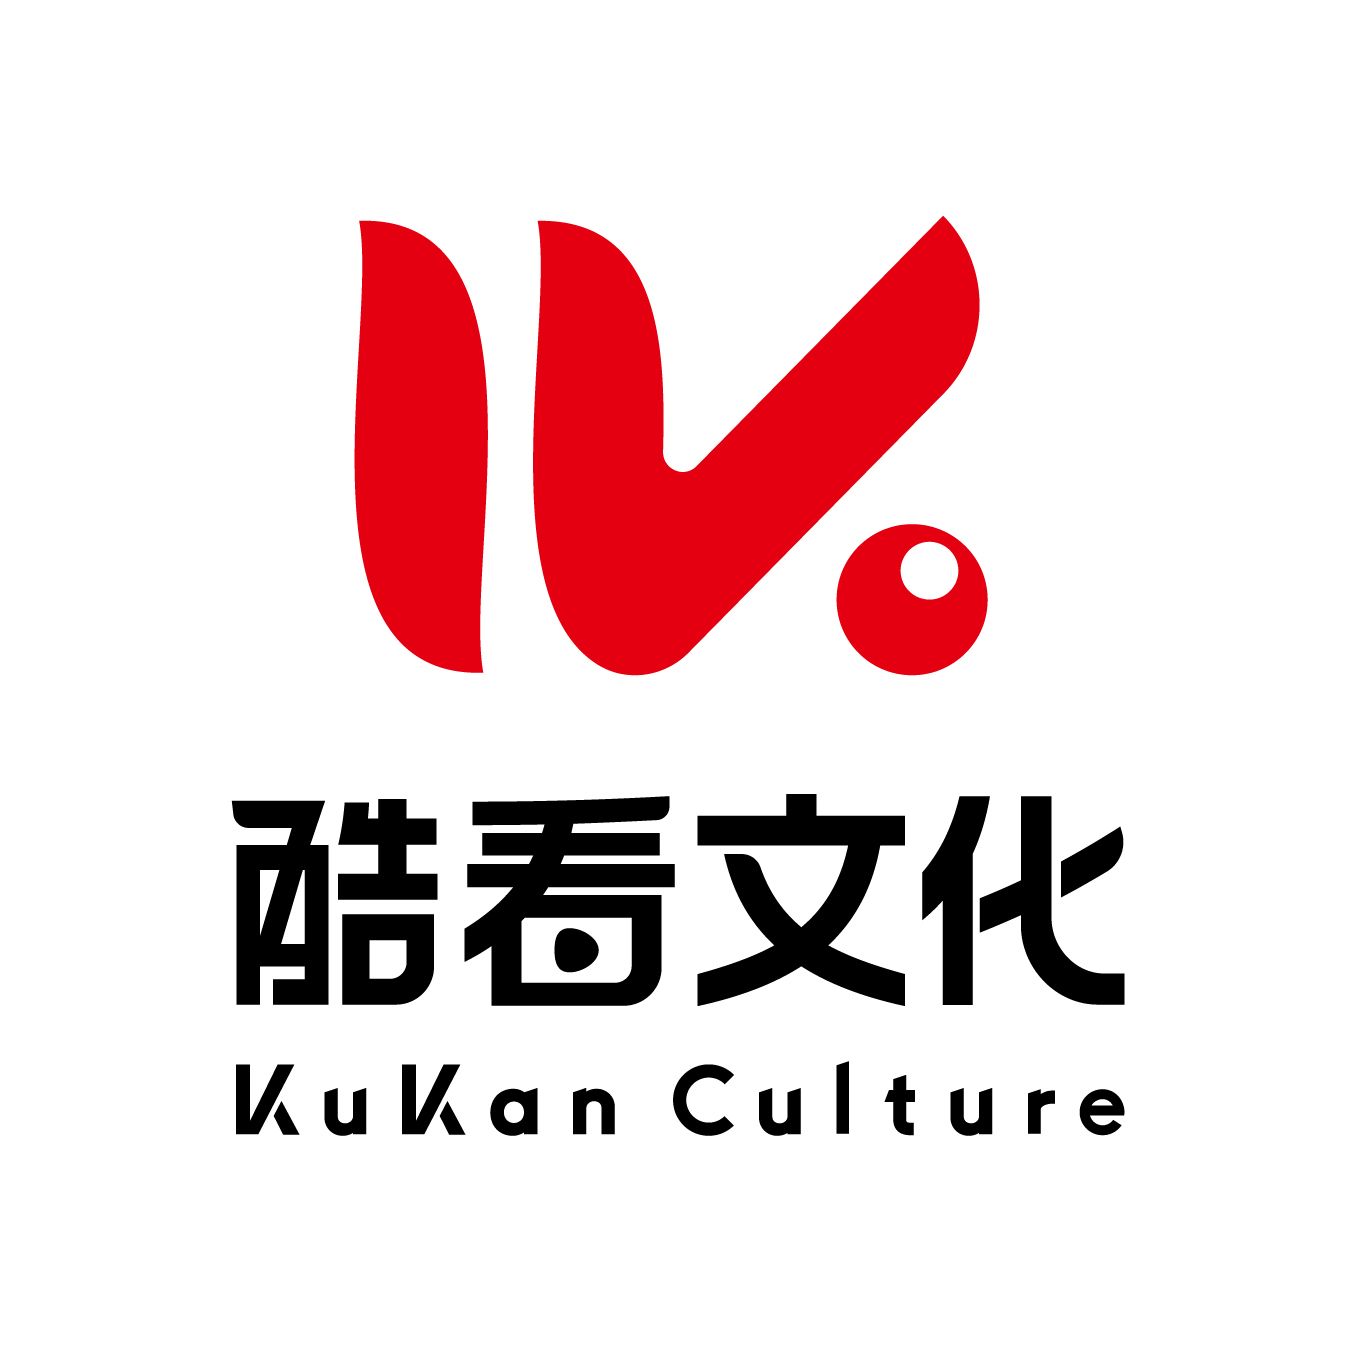 Kukan Culture Logo